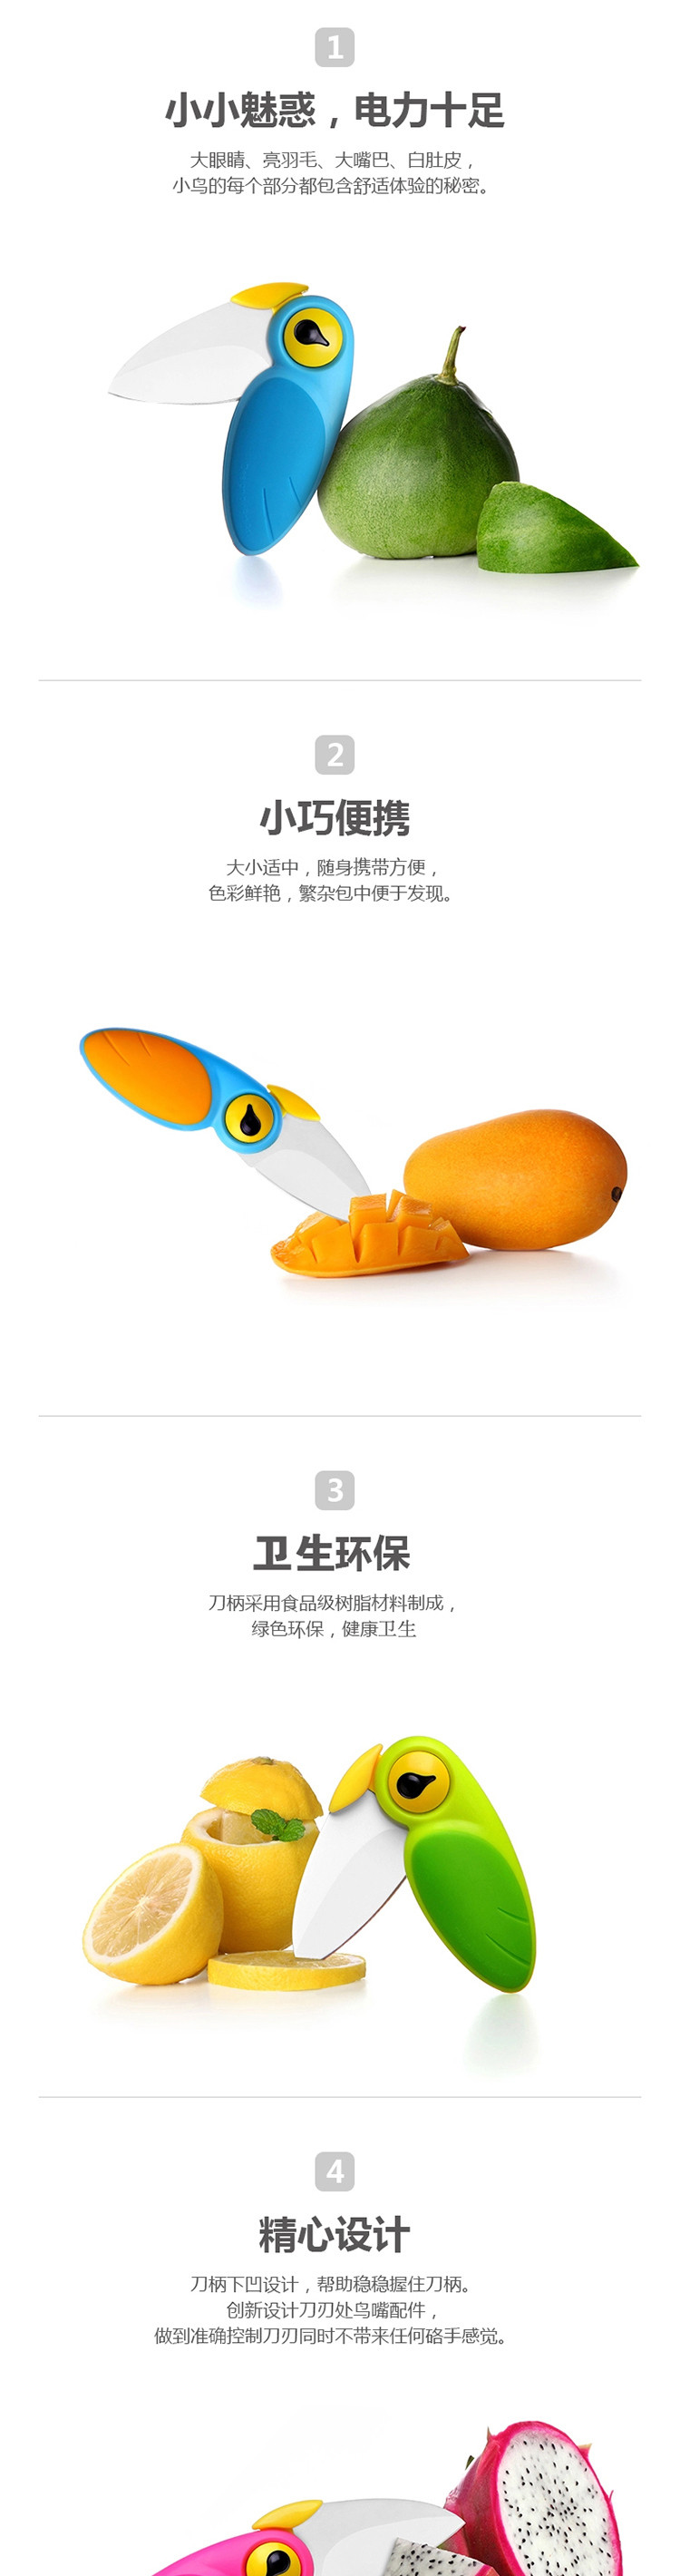 台湾artiart 创艺媚鸟水果刀（陶瓷刀片）折叠 削皮刀 蓝黄色 CUTE024A